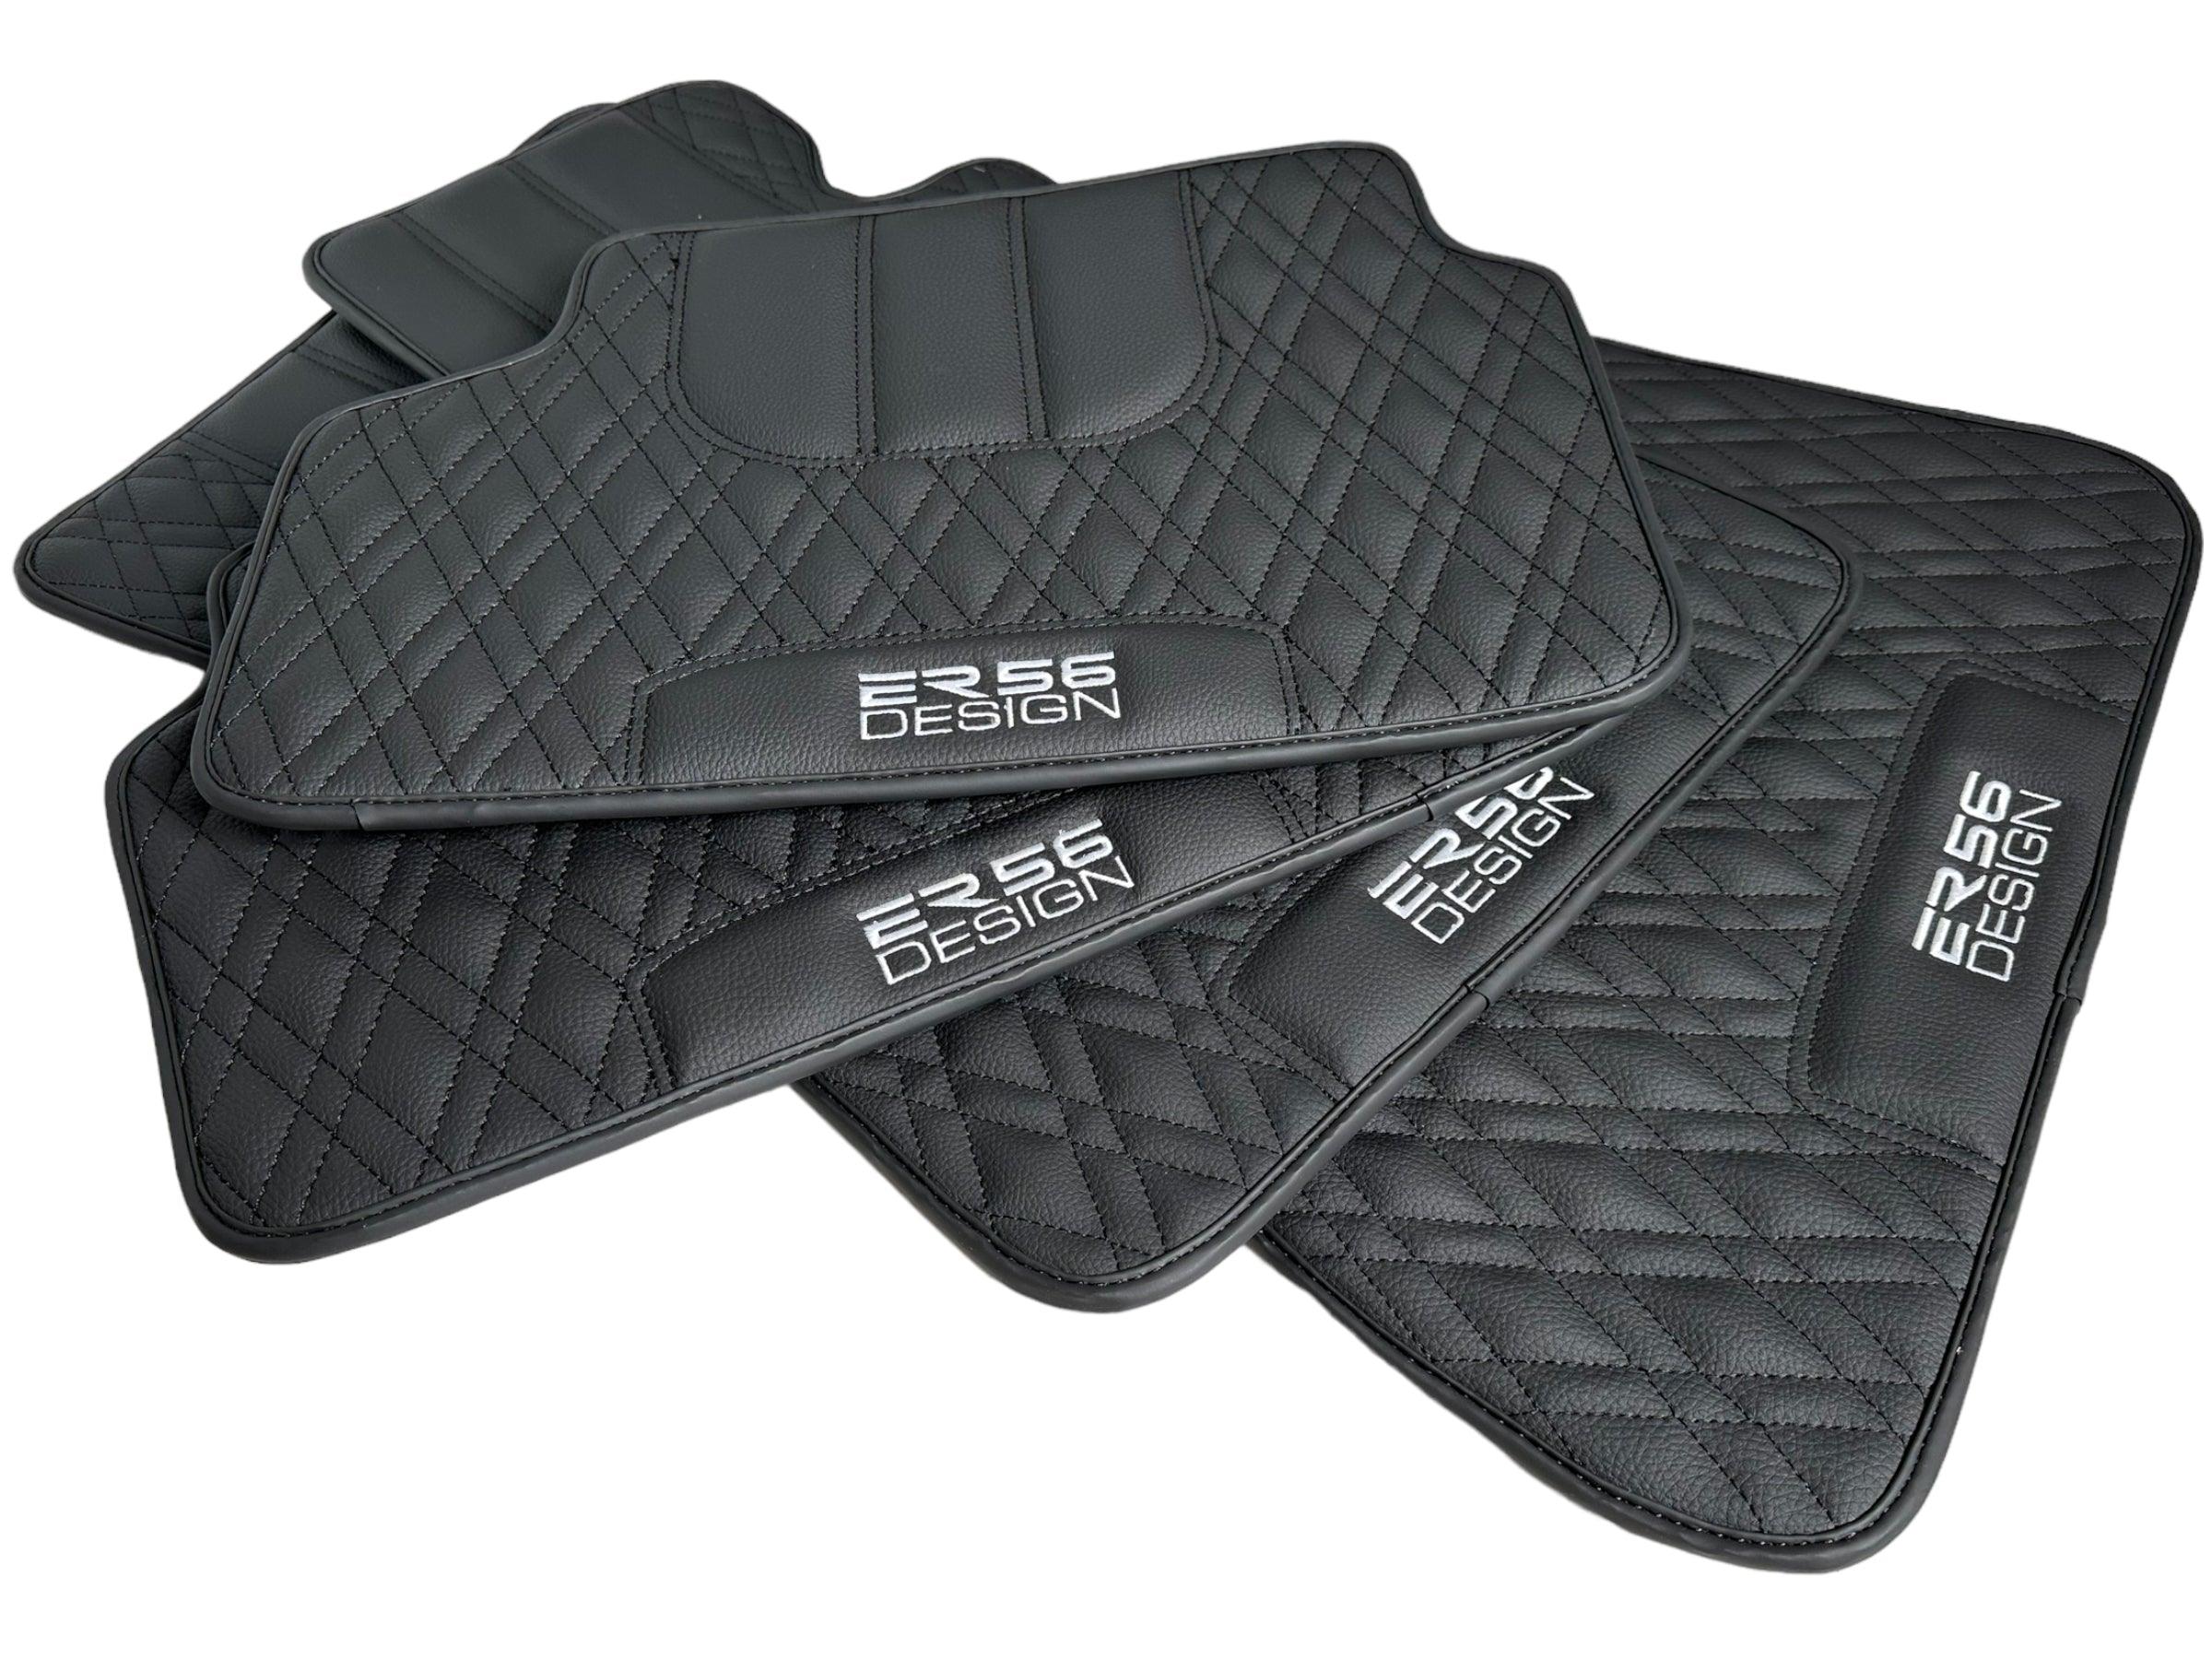 Floor Mats For BMW 1 Series F21 3-door Hatchback Black Leather Er56 Design - AutoWin